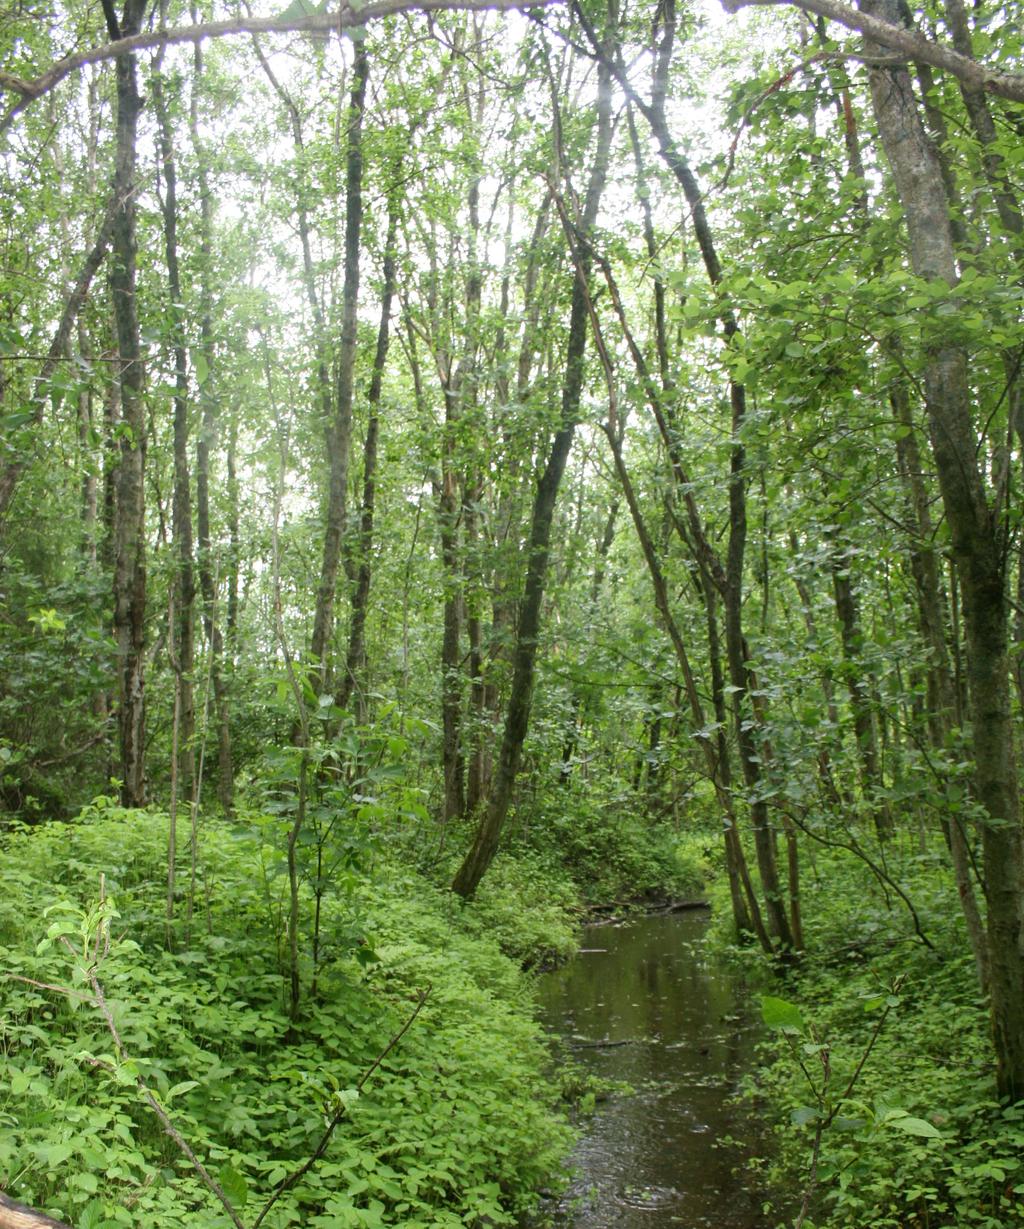 Gråor-heggeskogen på Langøra S. Gråor-heggeskoger har stor tetthet av hekkende spurvefugler.